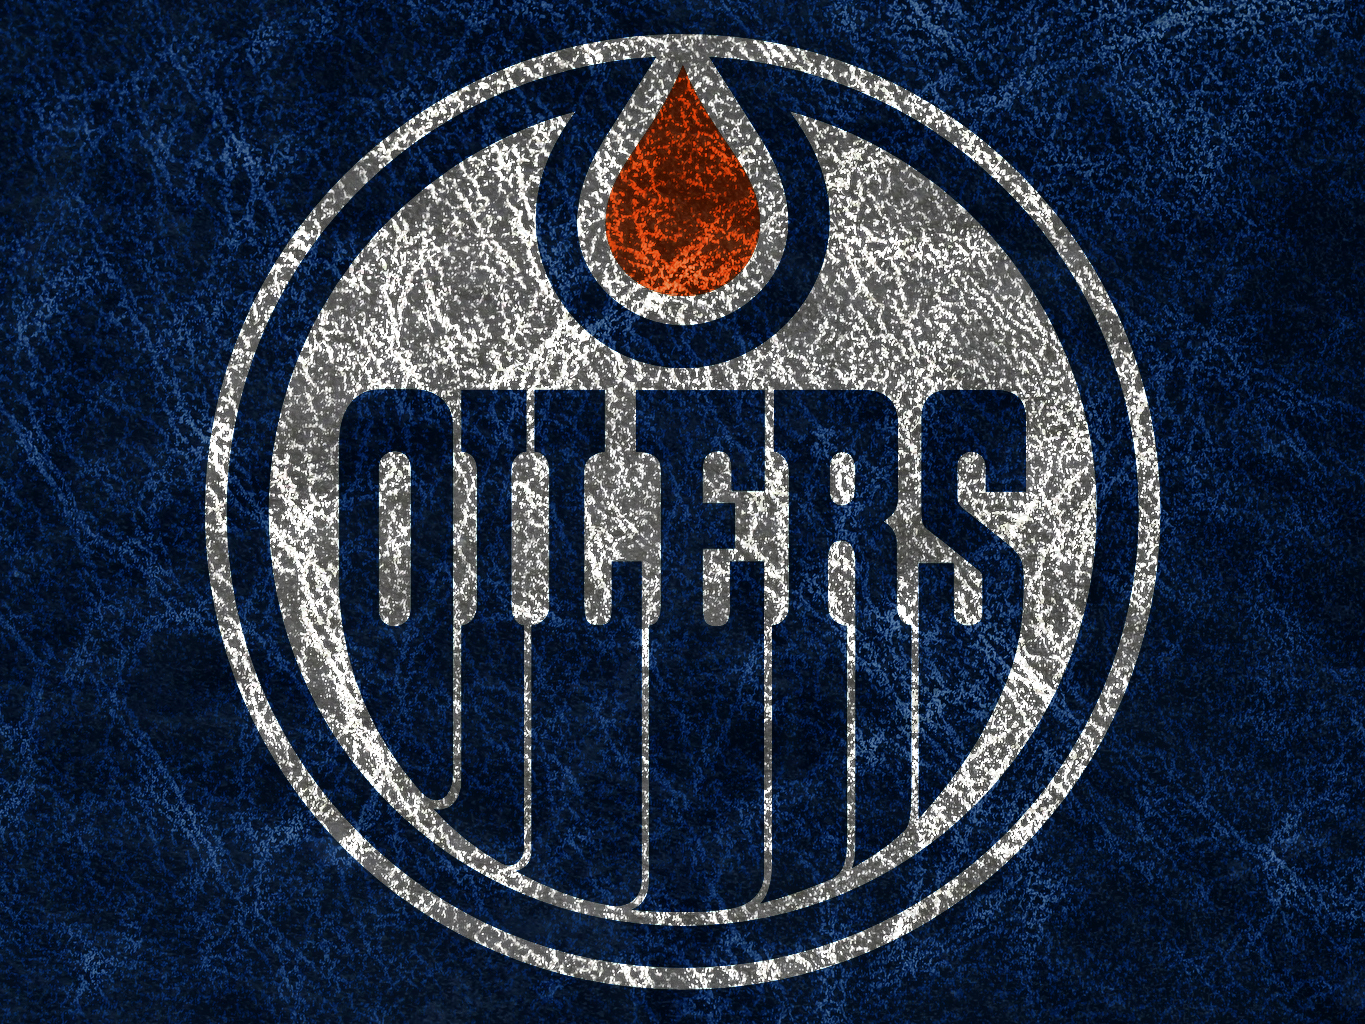 Edmonton Oilers Wallpaper Background